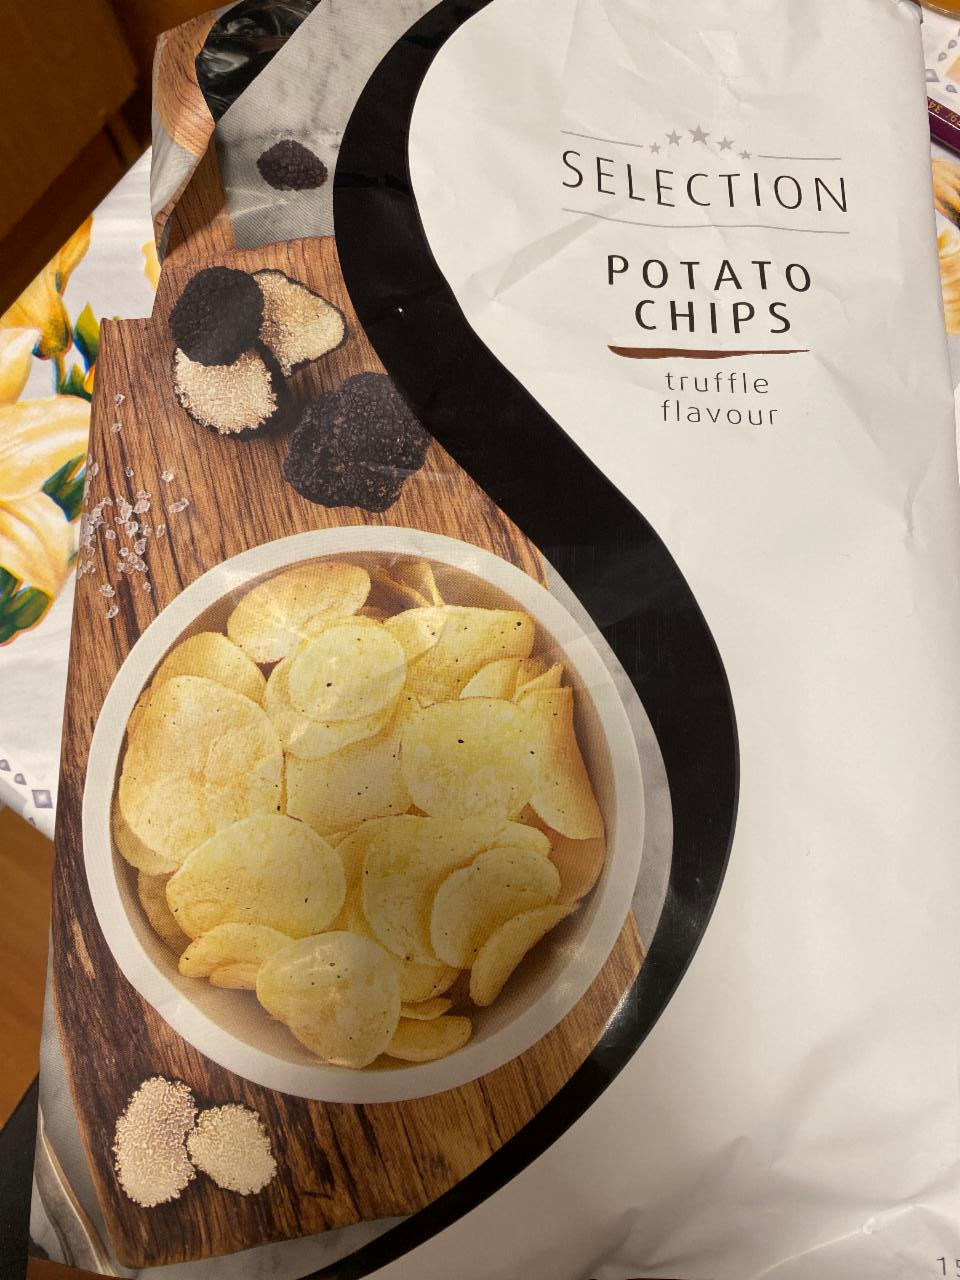 Fotografie - Potato chips truffle flavour Selection